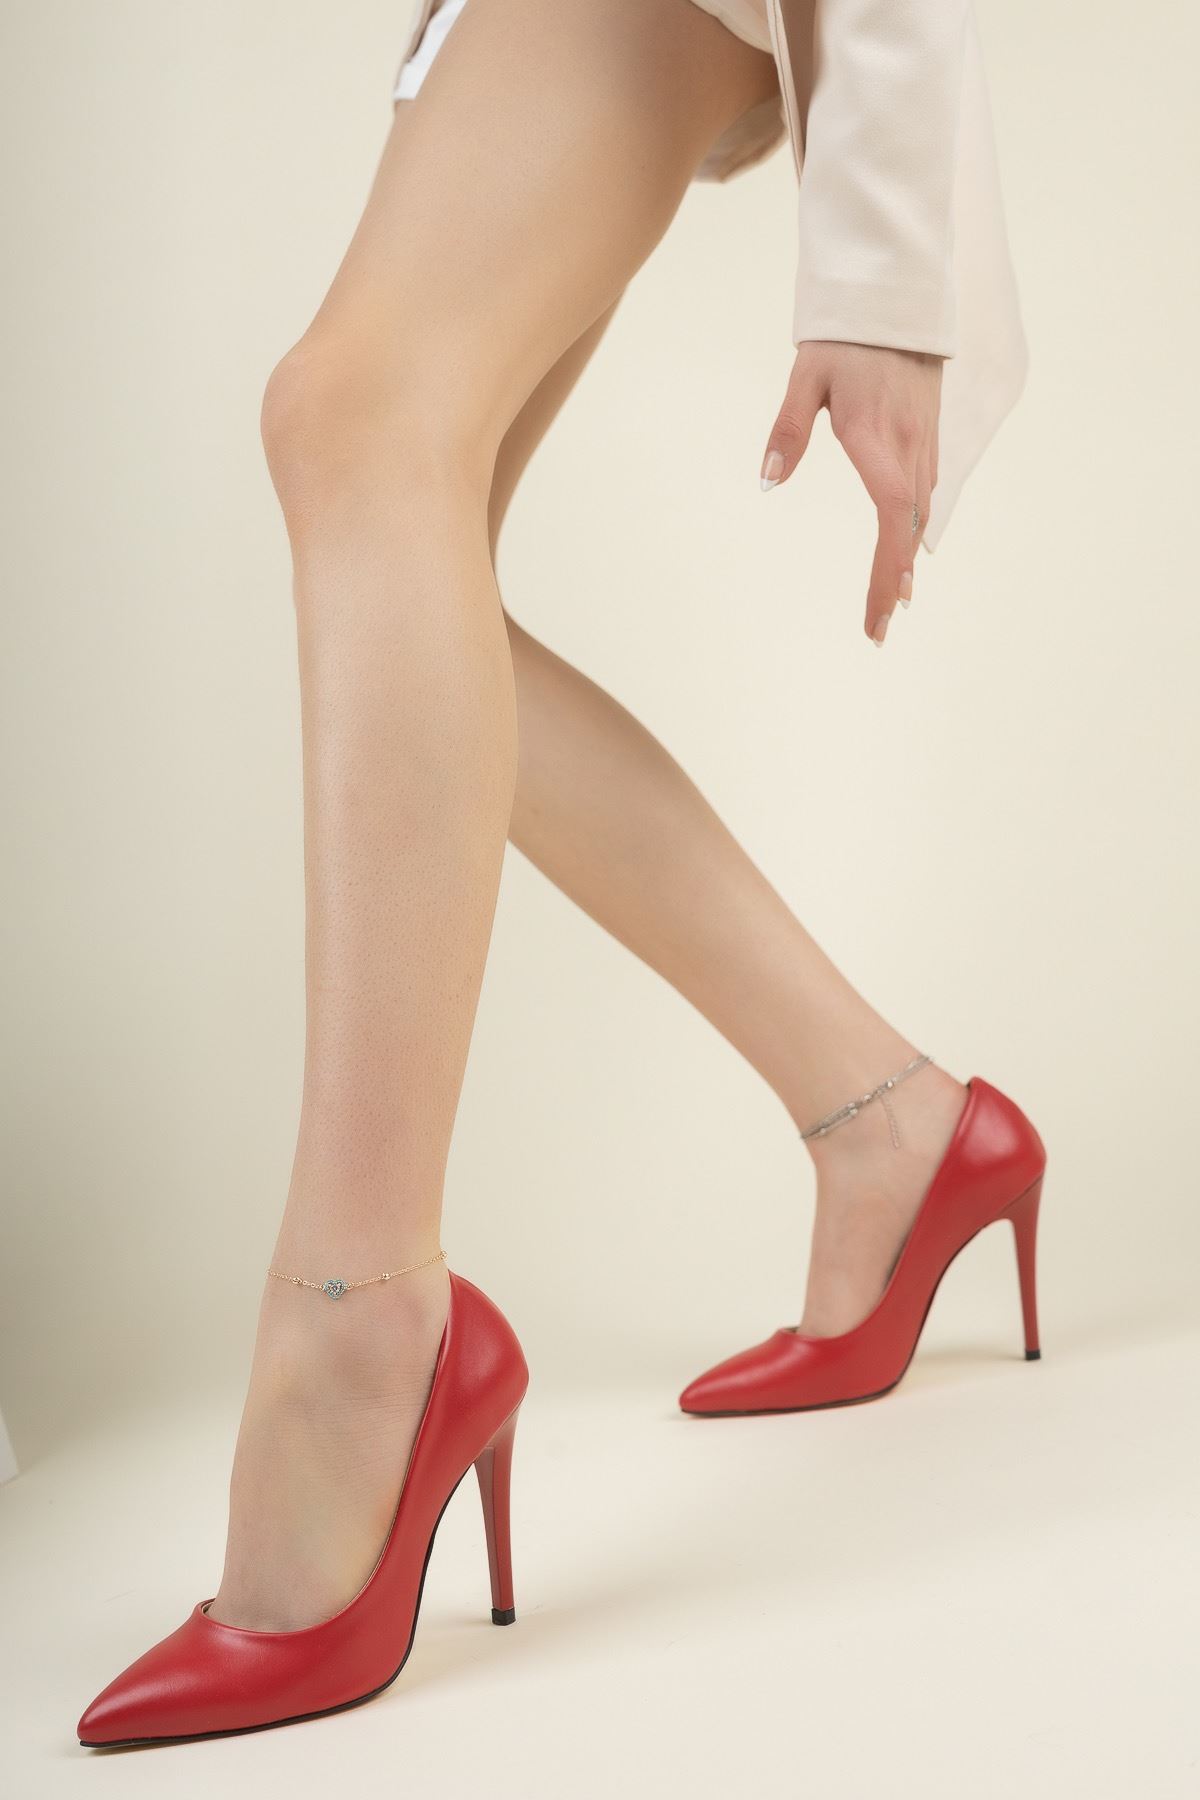 Kadın Adelina İnce YüksekTopuklu Stiletto - Kırmızı Deri